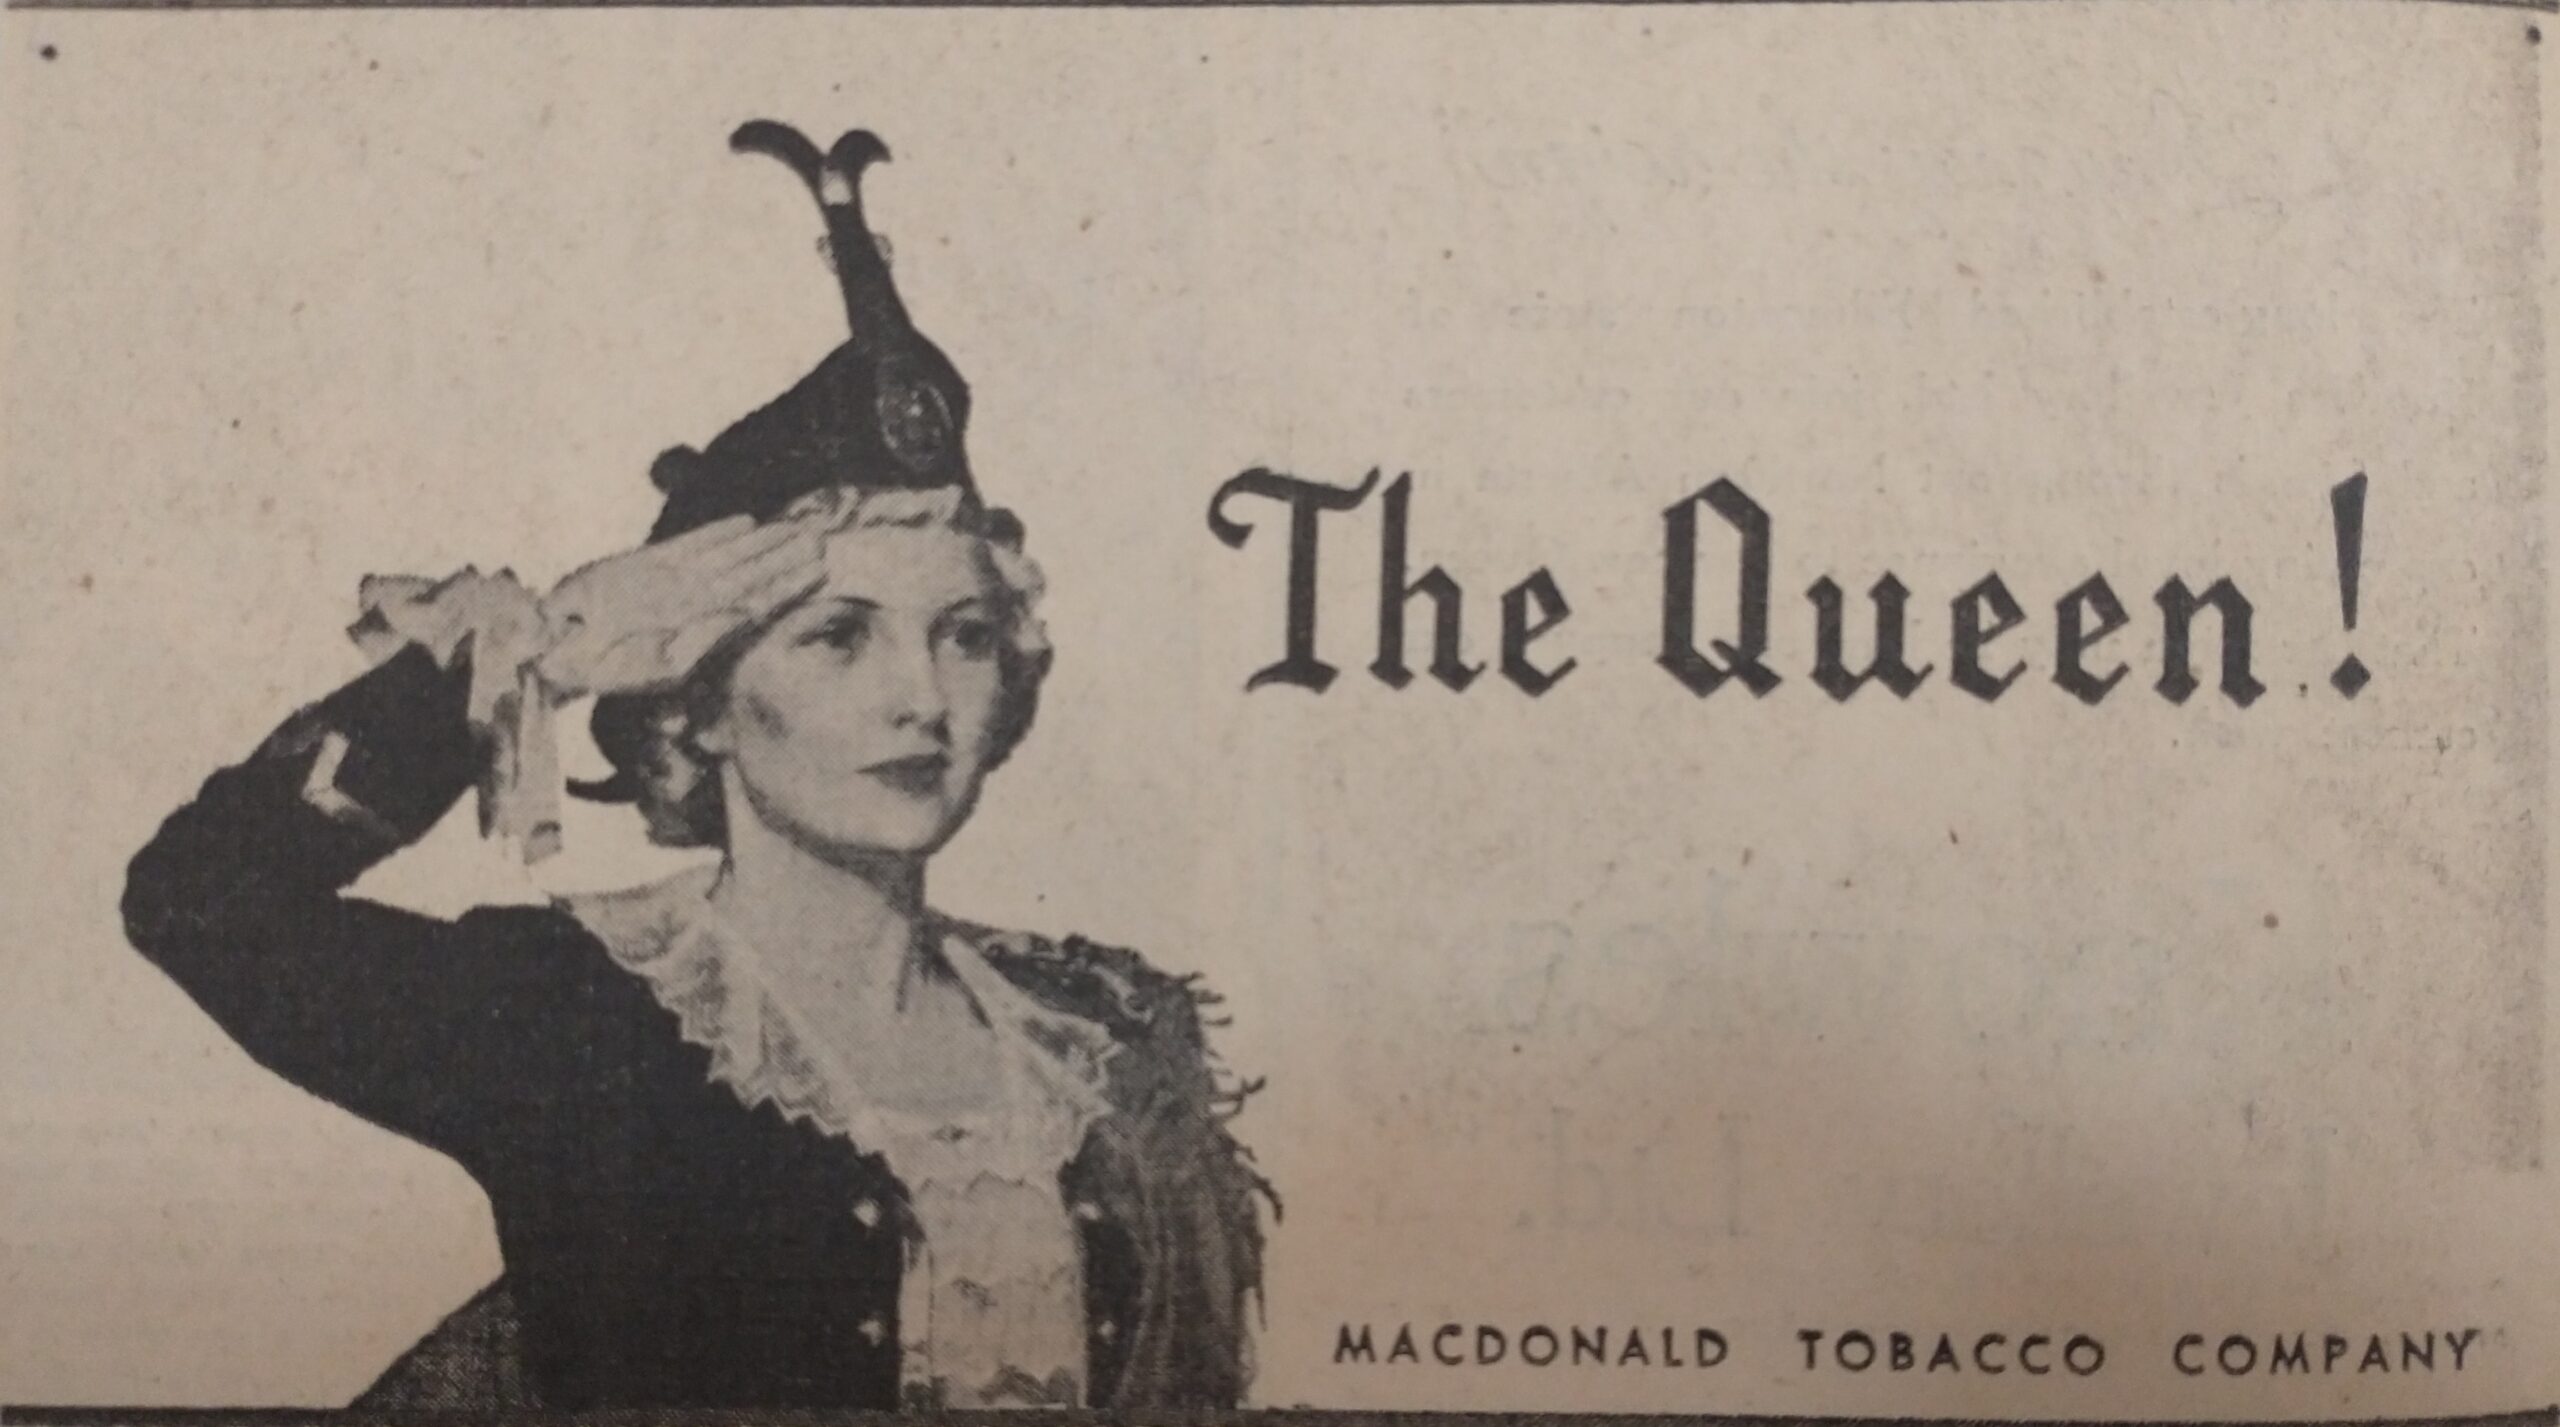 Publicité de la MacDonald Tobacco Company, qui remet en scène la femme qui apparaît sur toutes les annonces de l'entreprise.